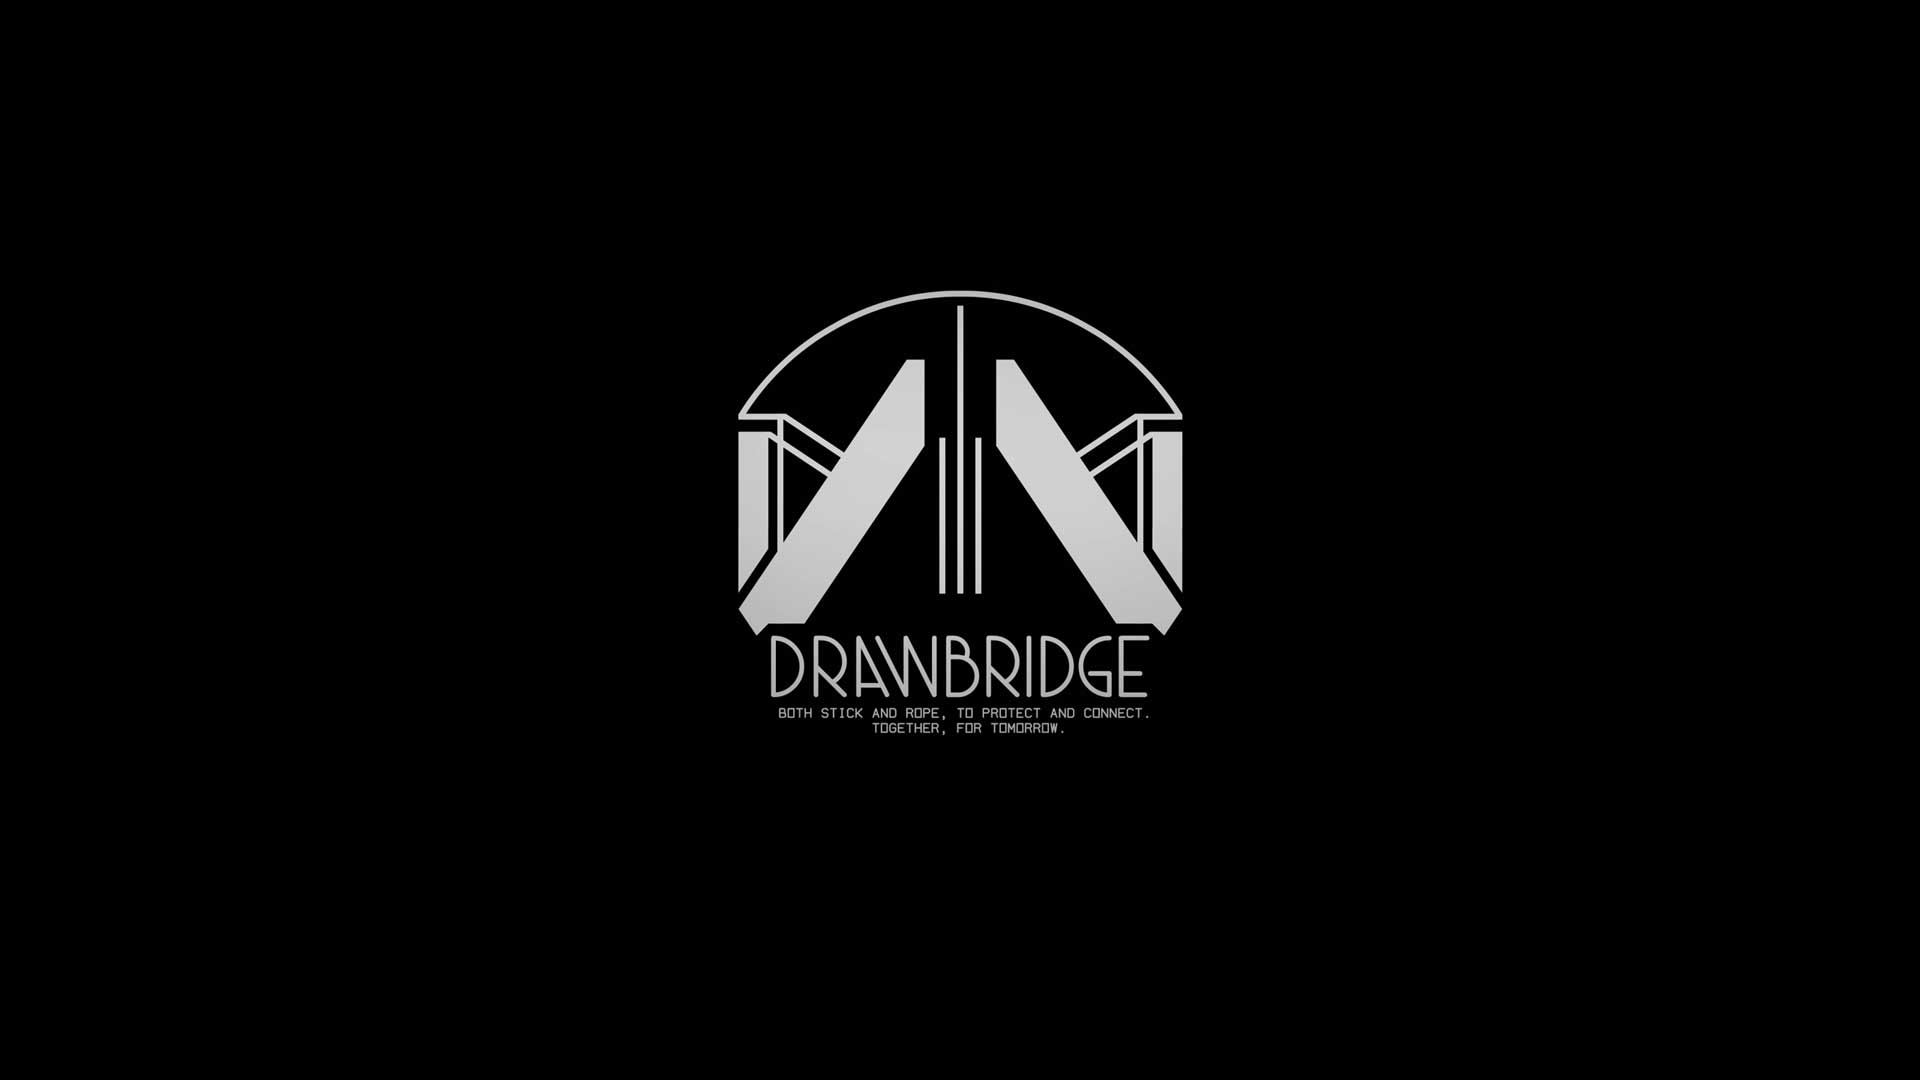 لوگو سازمان Drawbridge بازی دث استرندینگ ۲ که احتمالا فرجایل در آن کار می‌کند